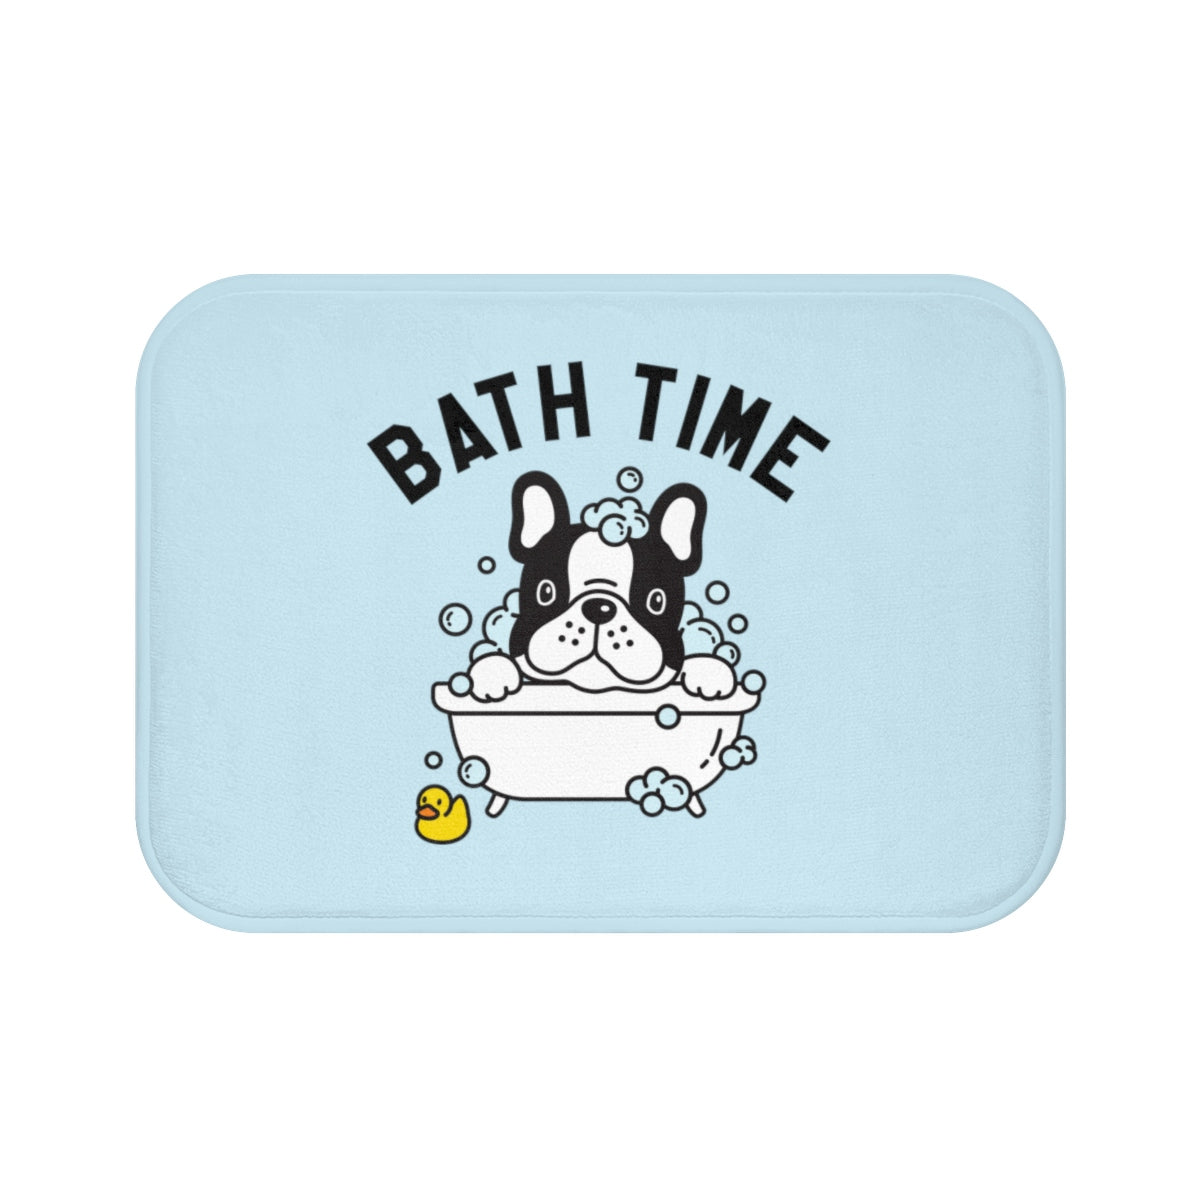 Non Slip Bath Mat, Bath Time Dog Puppy Duck Washing Illustration, Memory Foam Blue Bath Mat Bathroom Floor Rug, Luxury Bath Rugs Starcove Fashion